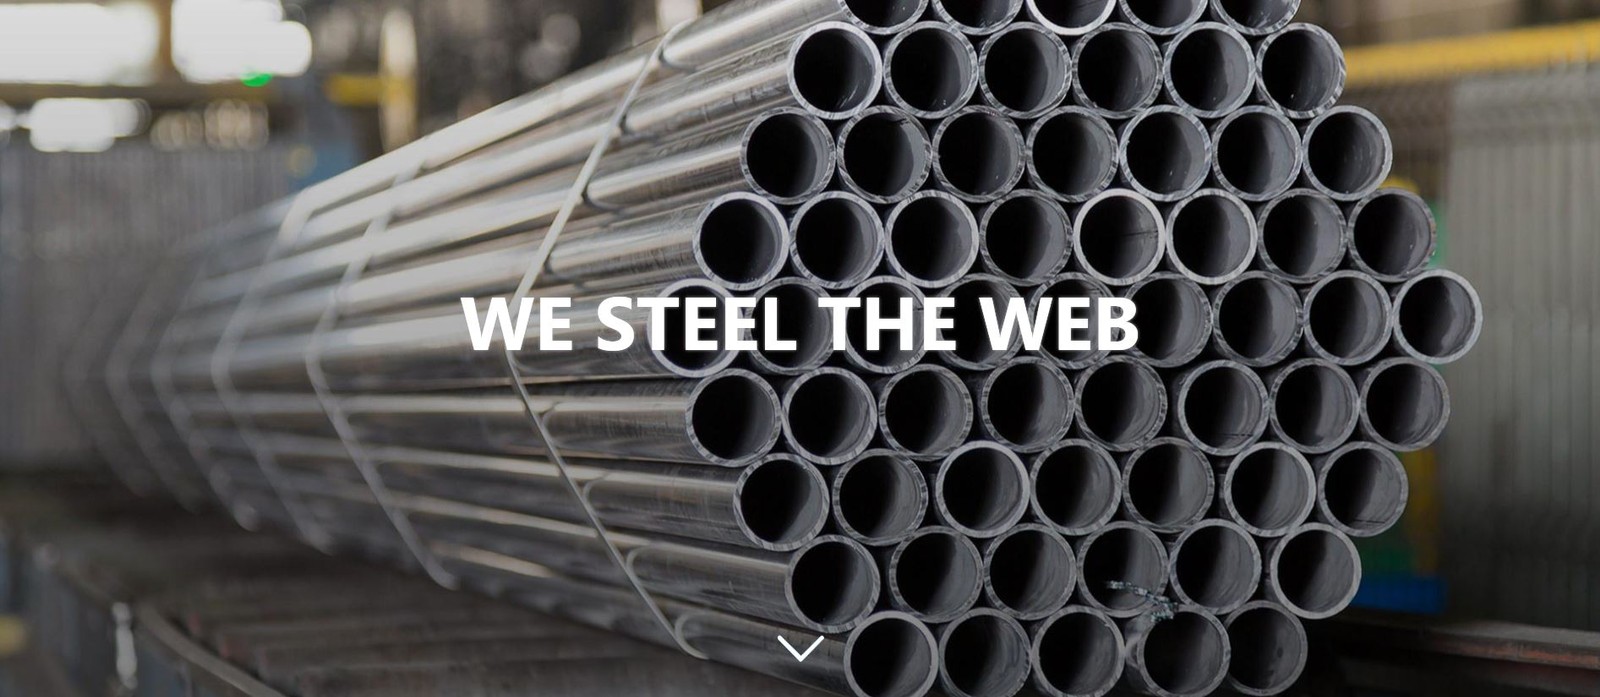 ‚We steel the web‘ – unter diesem Motto präsentiert die Wuppermann AG in Düsseldorf ihre neue Web-Plattform für das produzierende Gewerbe. Die Webseite tubes-online.com wurde im Februar 2018 live geschaltet.